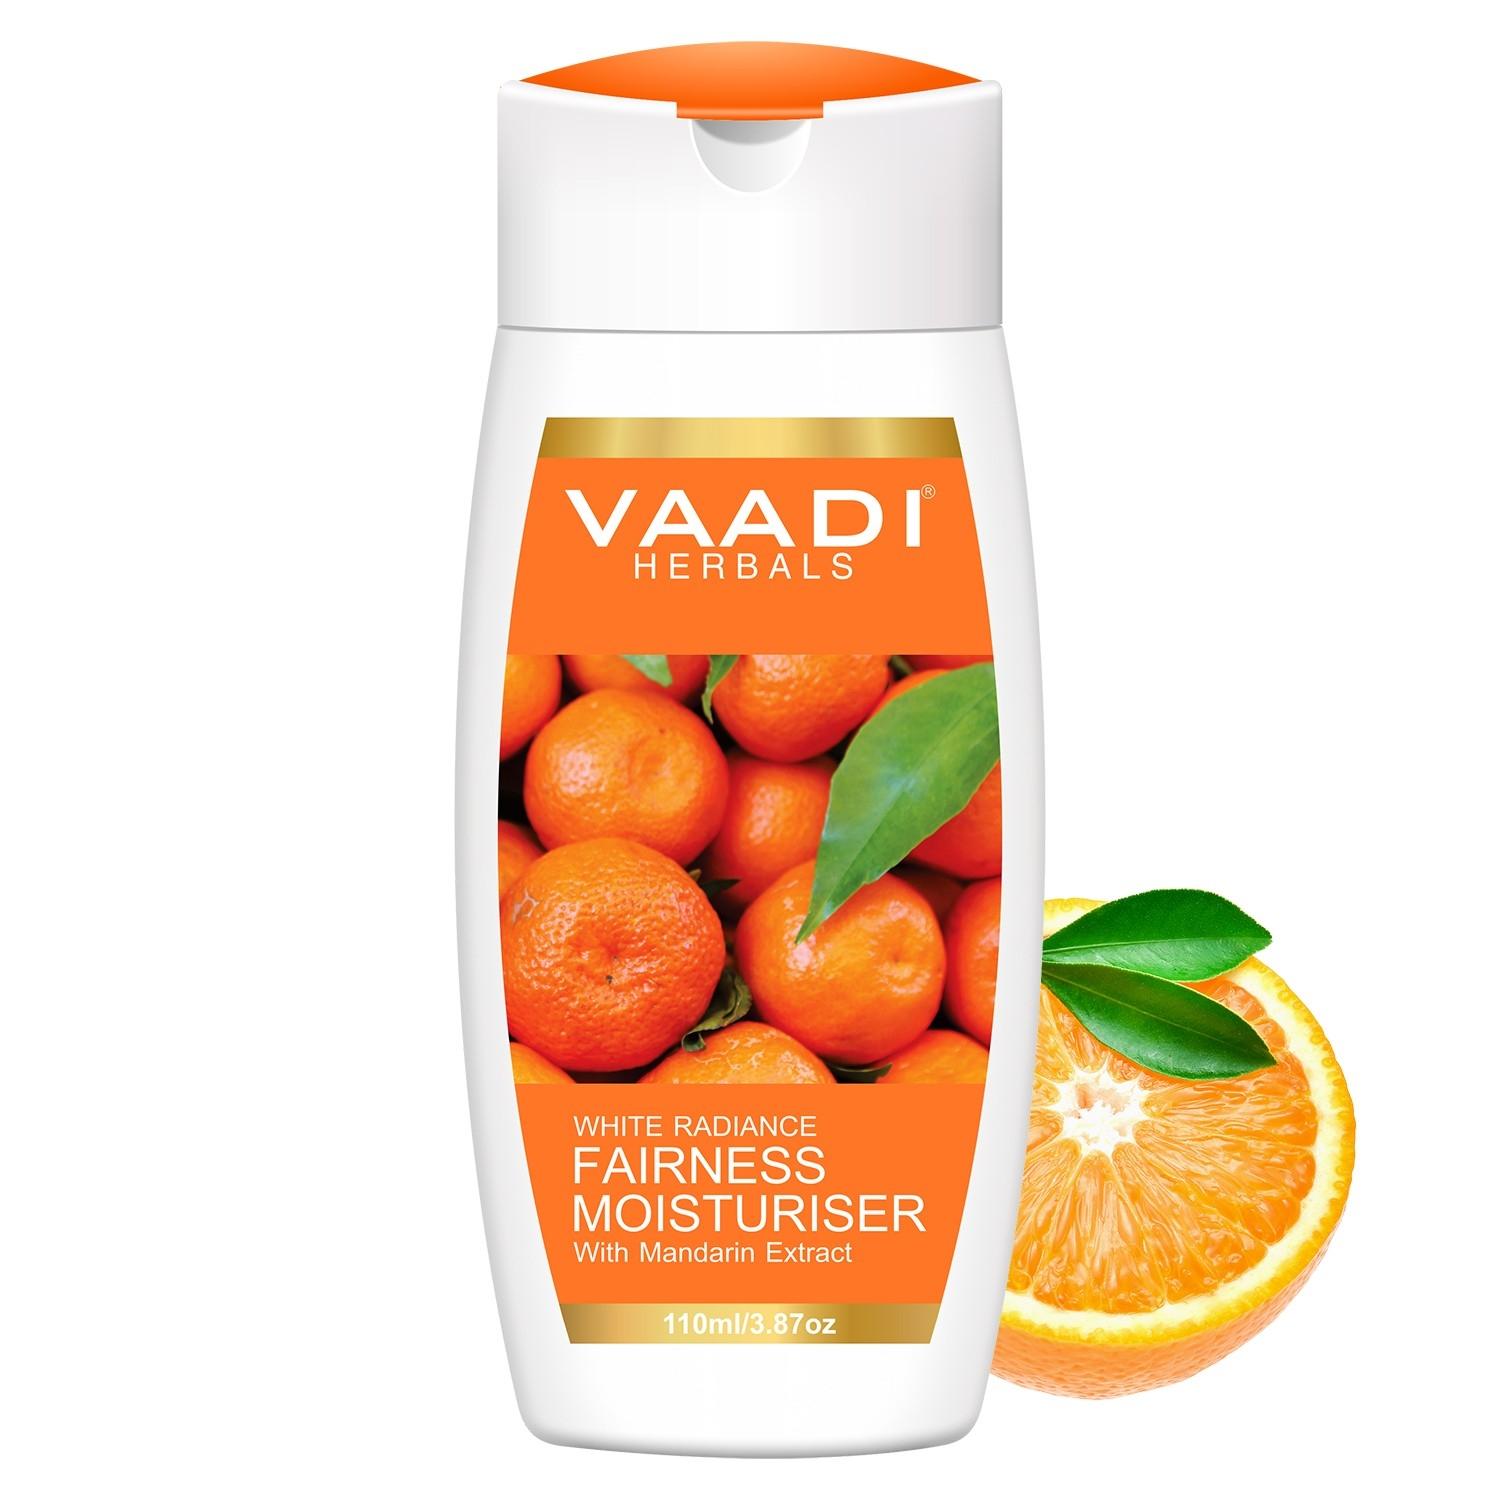 vaadi herbals mandarin extract white radiance fairness moisturiser (110ml)